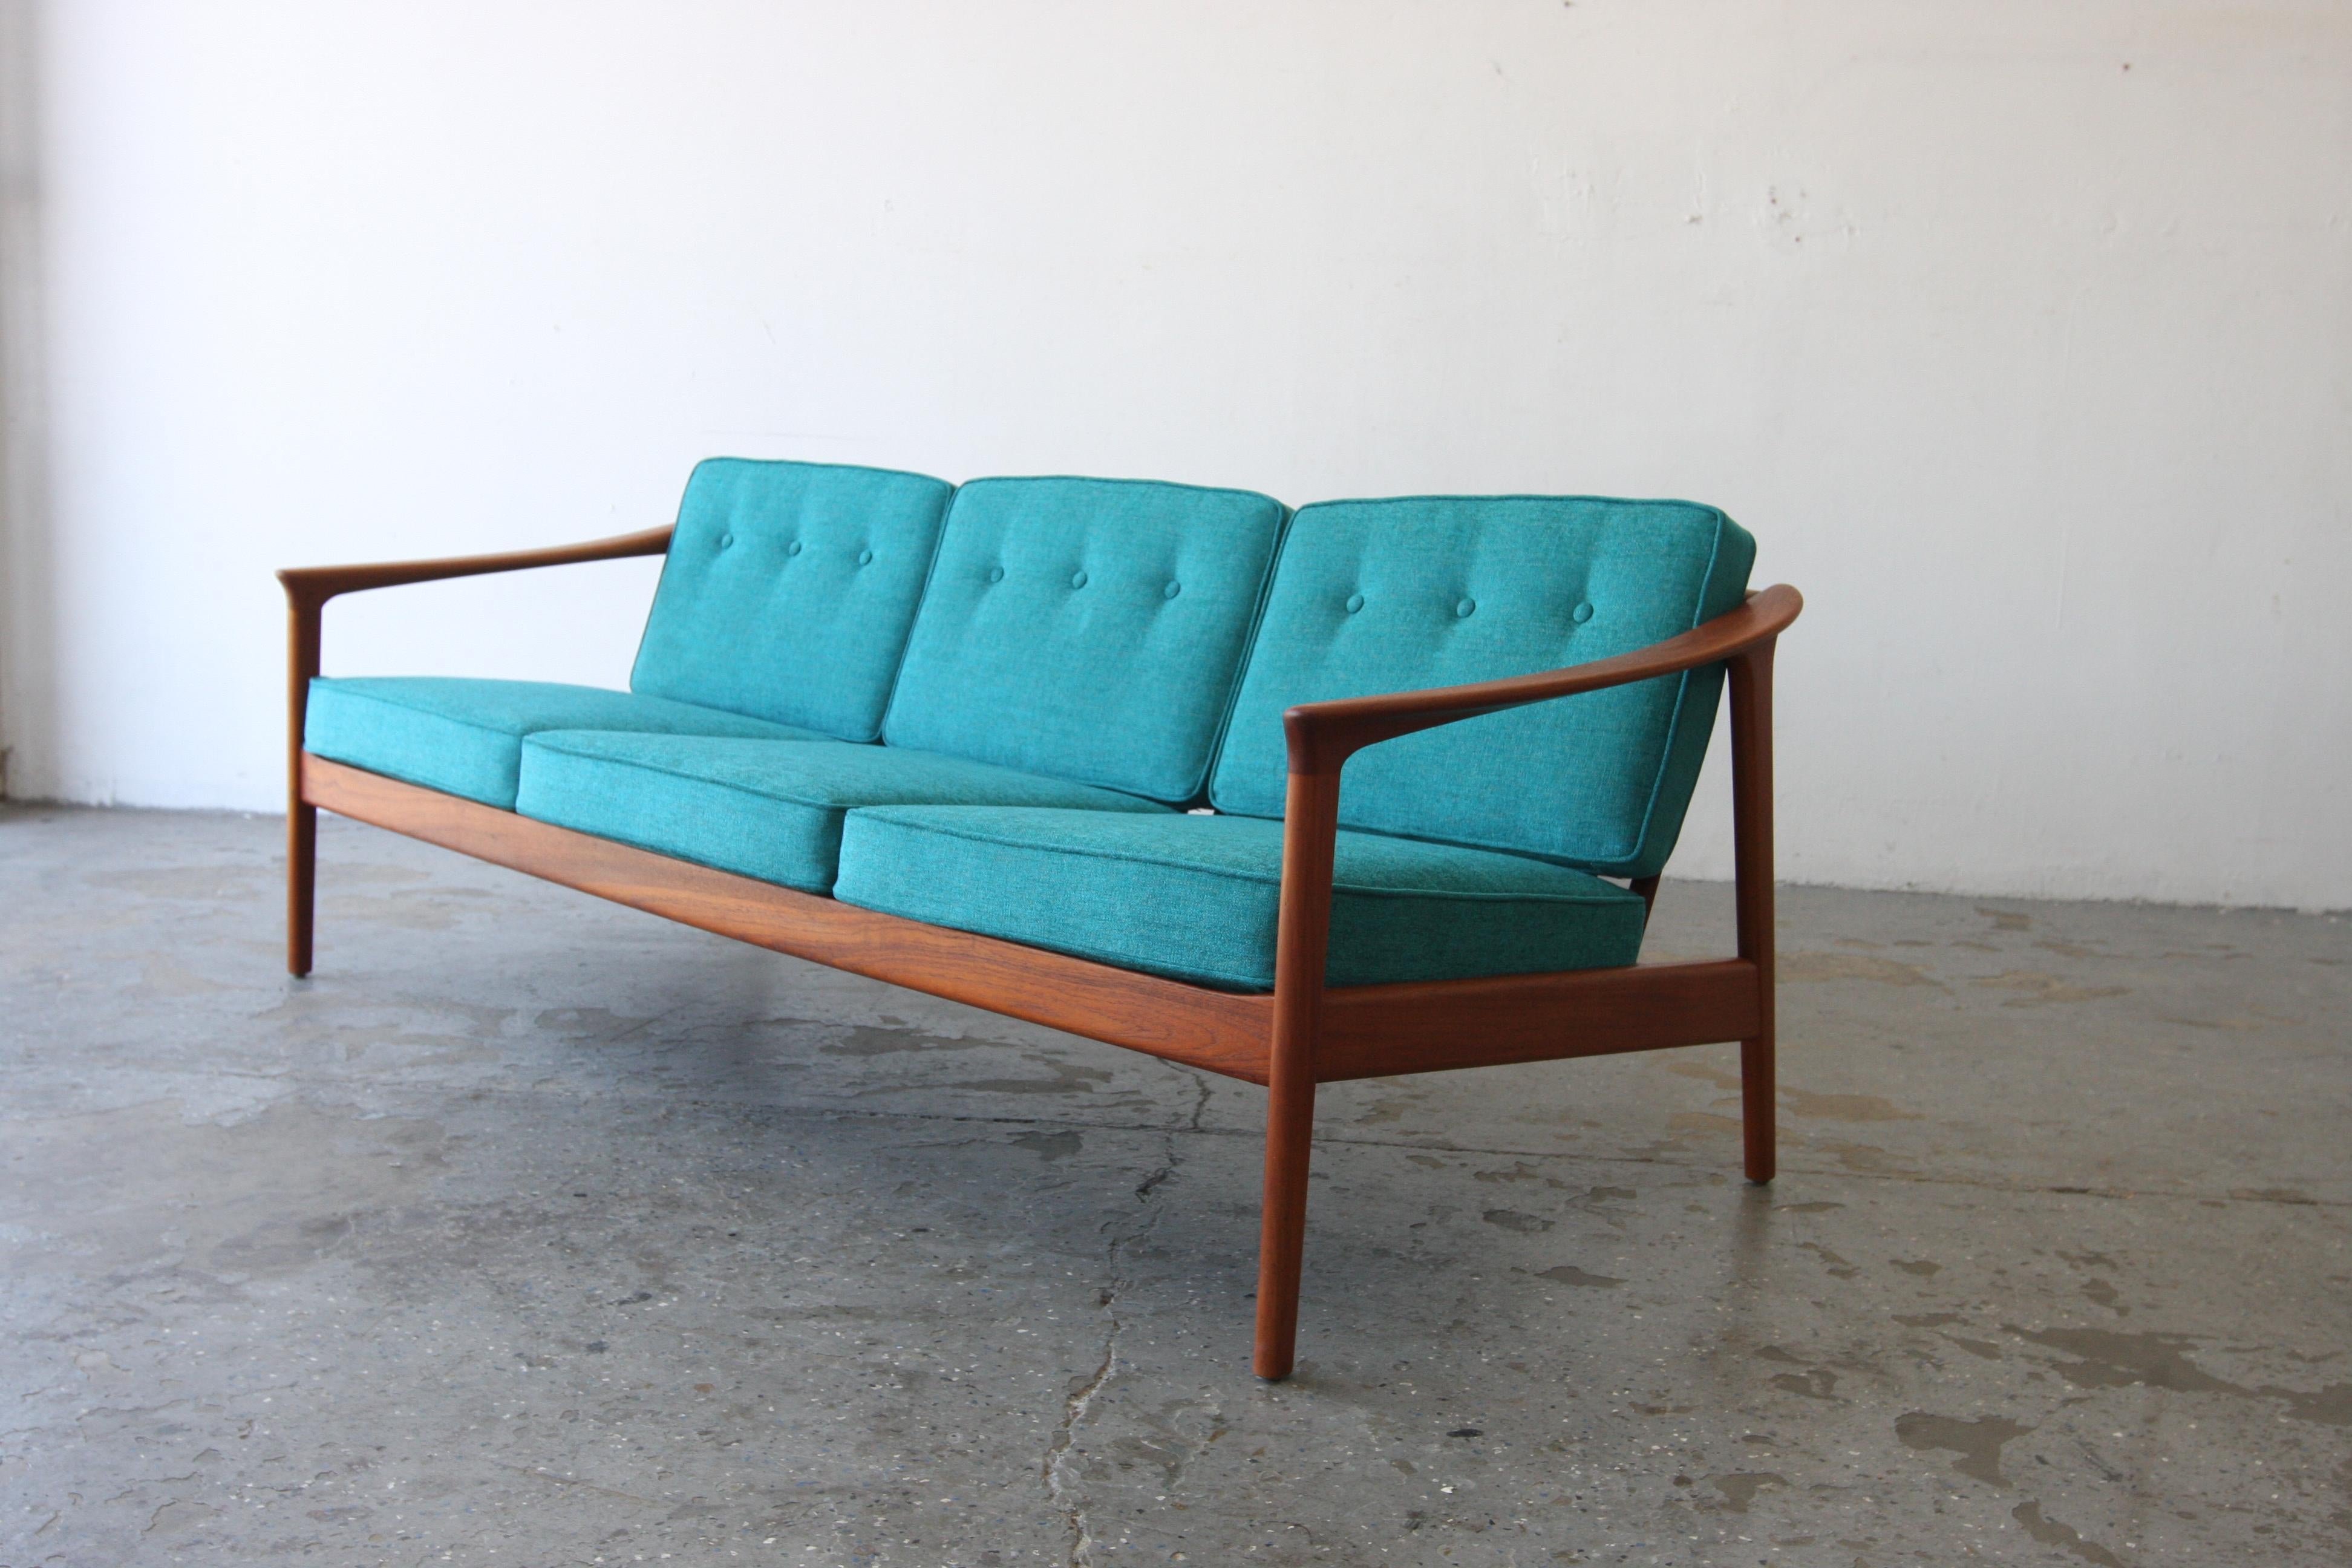 Monterey /5-161 Sofa, entworfen von Folke Ohlsson, produziert von dem schwedischen Hersteller Dux in den 1960er Jahren. Das Sofa hat profilierte Armlehnen, die für die hohe Handwerkskunst stehen, die für das skandinavische Design charakteristisch